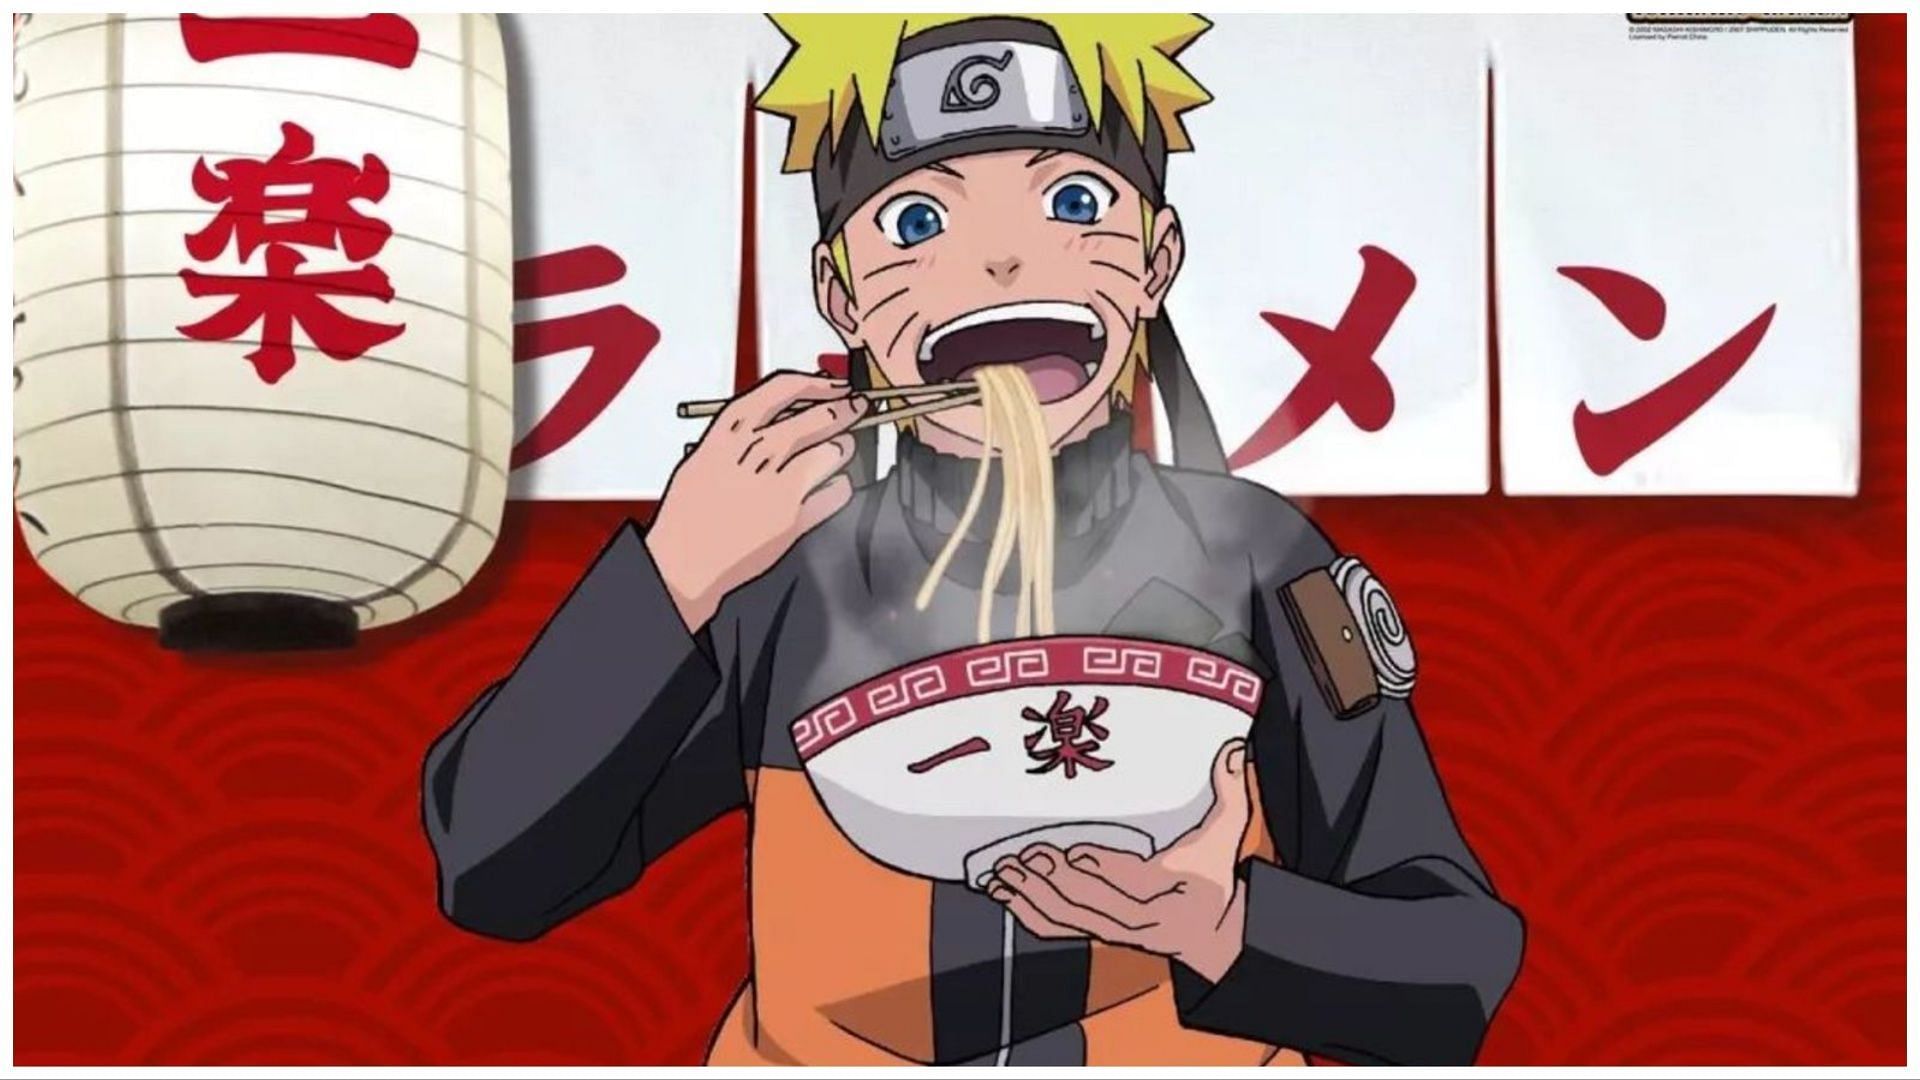 Naruto eating ramen in Naruto: Shippuden (Image Via Sportskeeda)